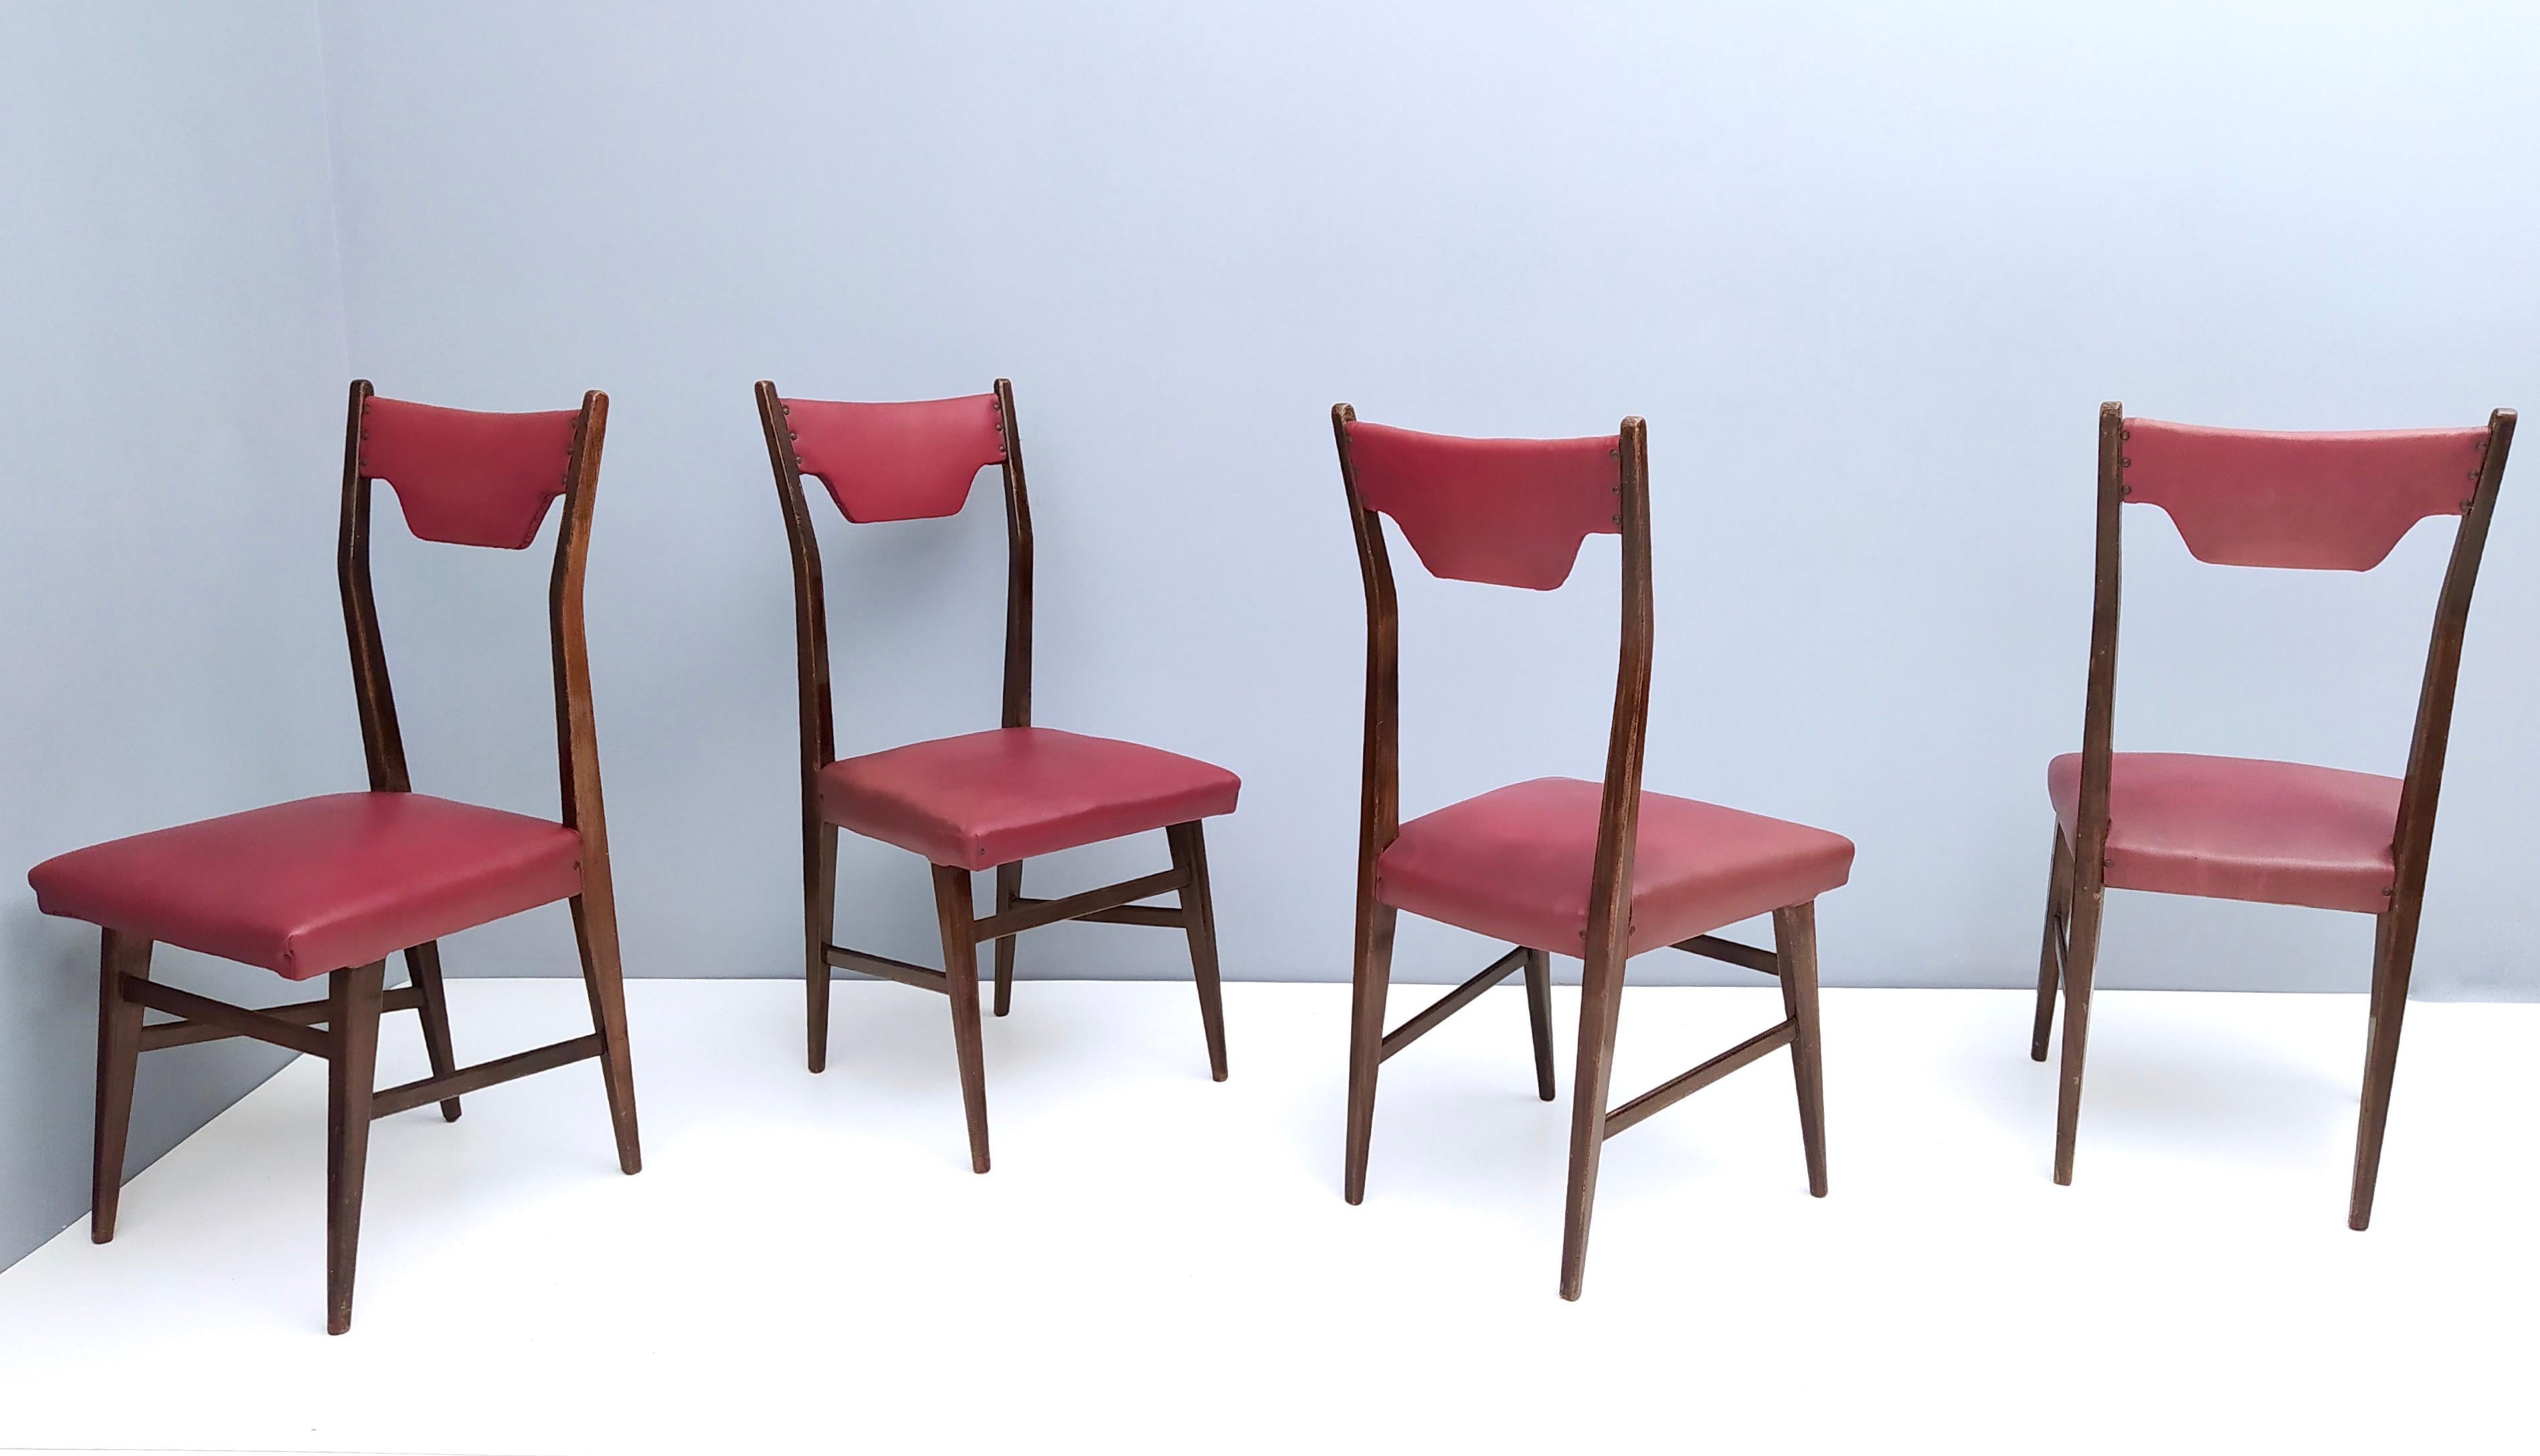 Fabriqué en Italie, années 1950.
Ces chaises présentent une structure en hêtre ébonisé, des clous en laiton et leur revêtement en skaï cramoisi d'origine. 
Il s'agit d'articles vintage, qui peuvent donc présenter de légères traces d'utilisation,